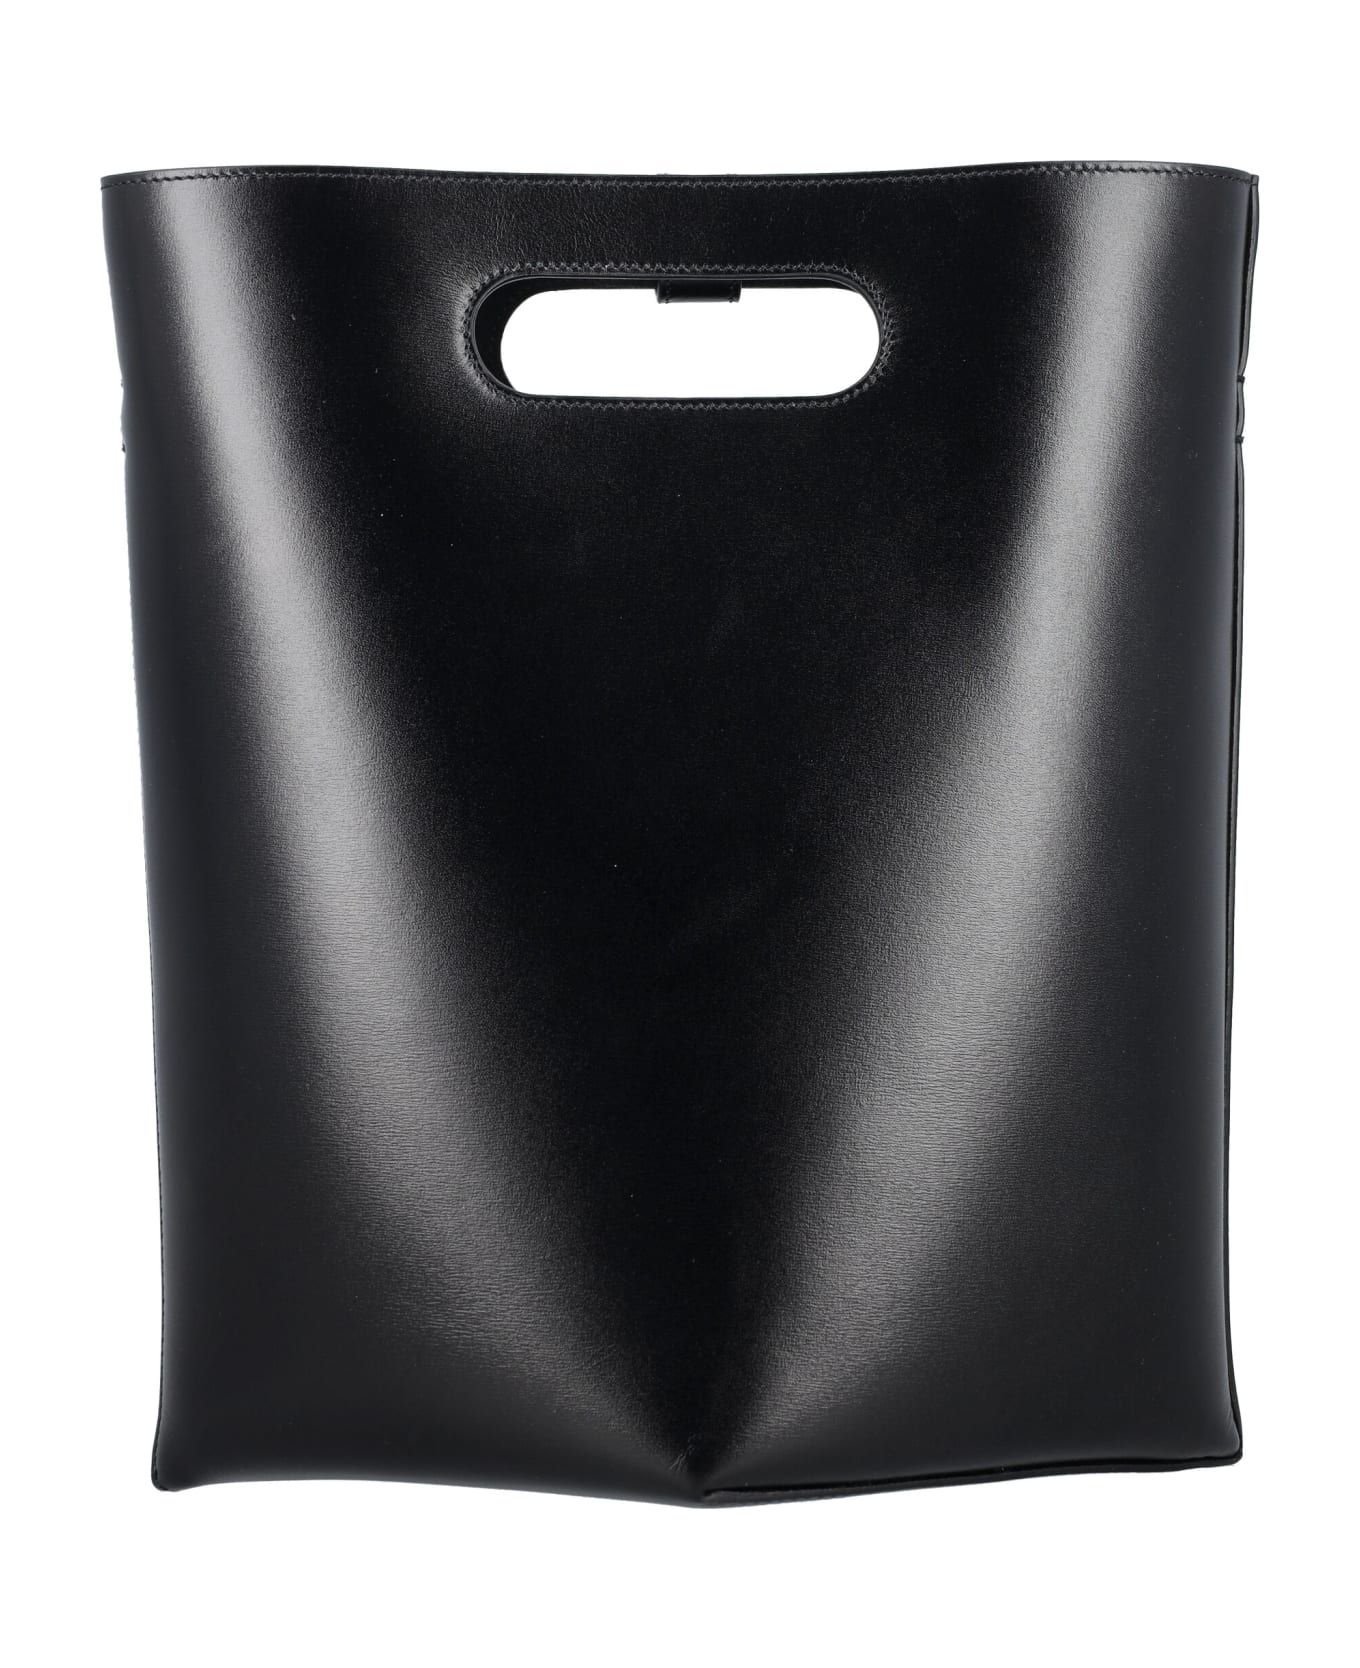 Alaia Folded Tote Bag - BLACK